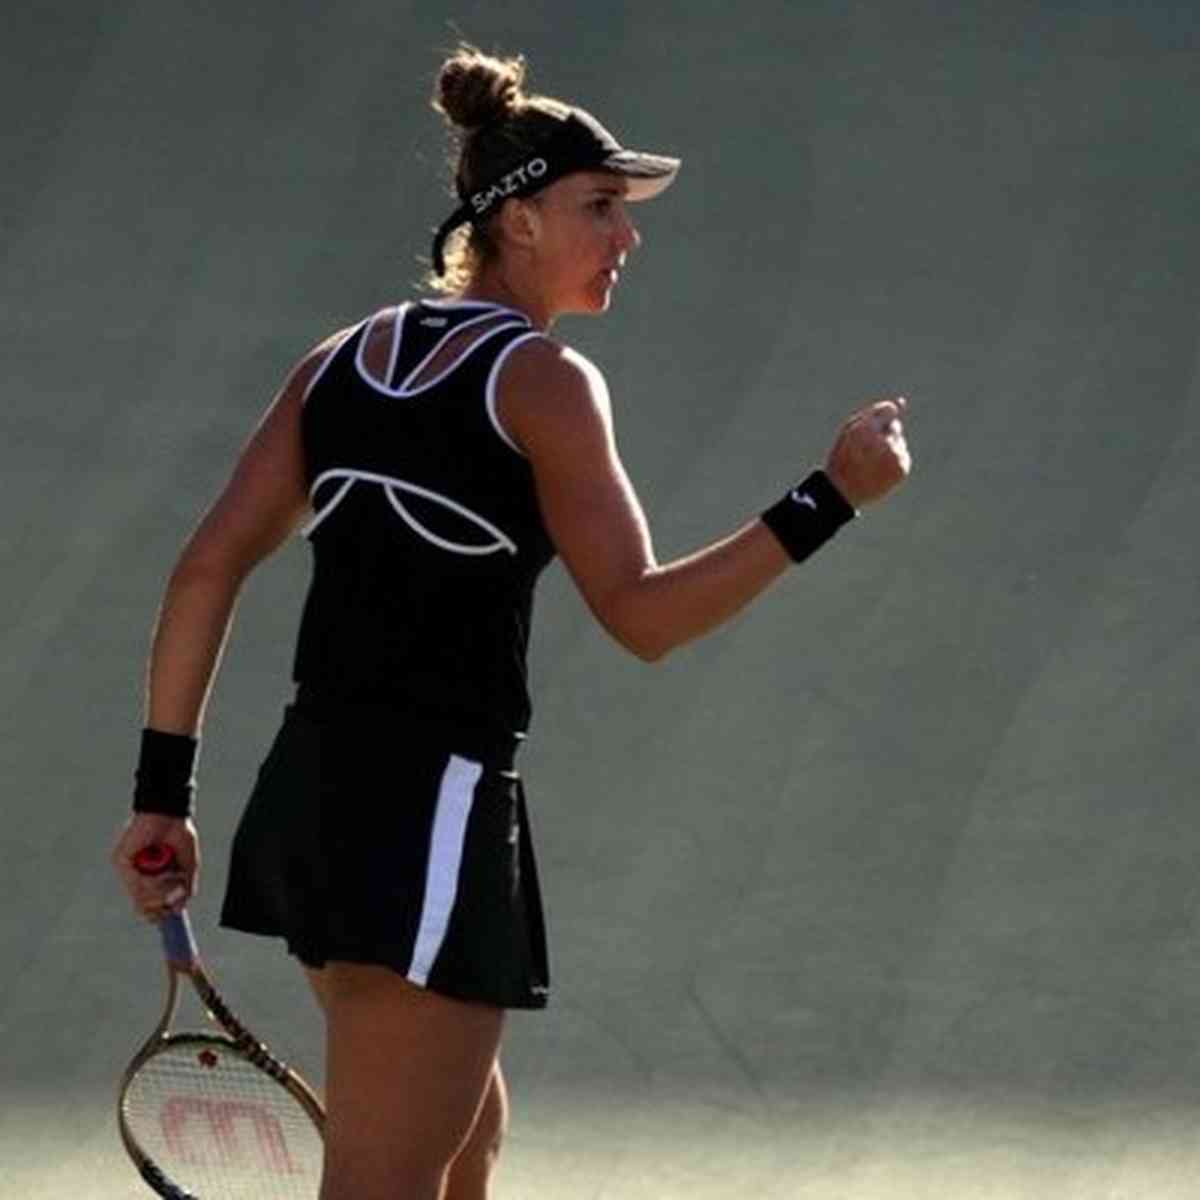 Tênis: Bia Haddad está na decisão do WTA 250 de Nottingham